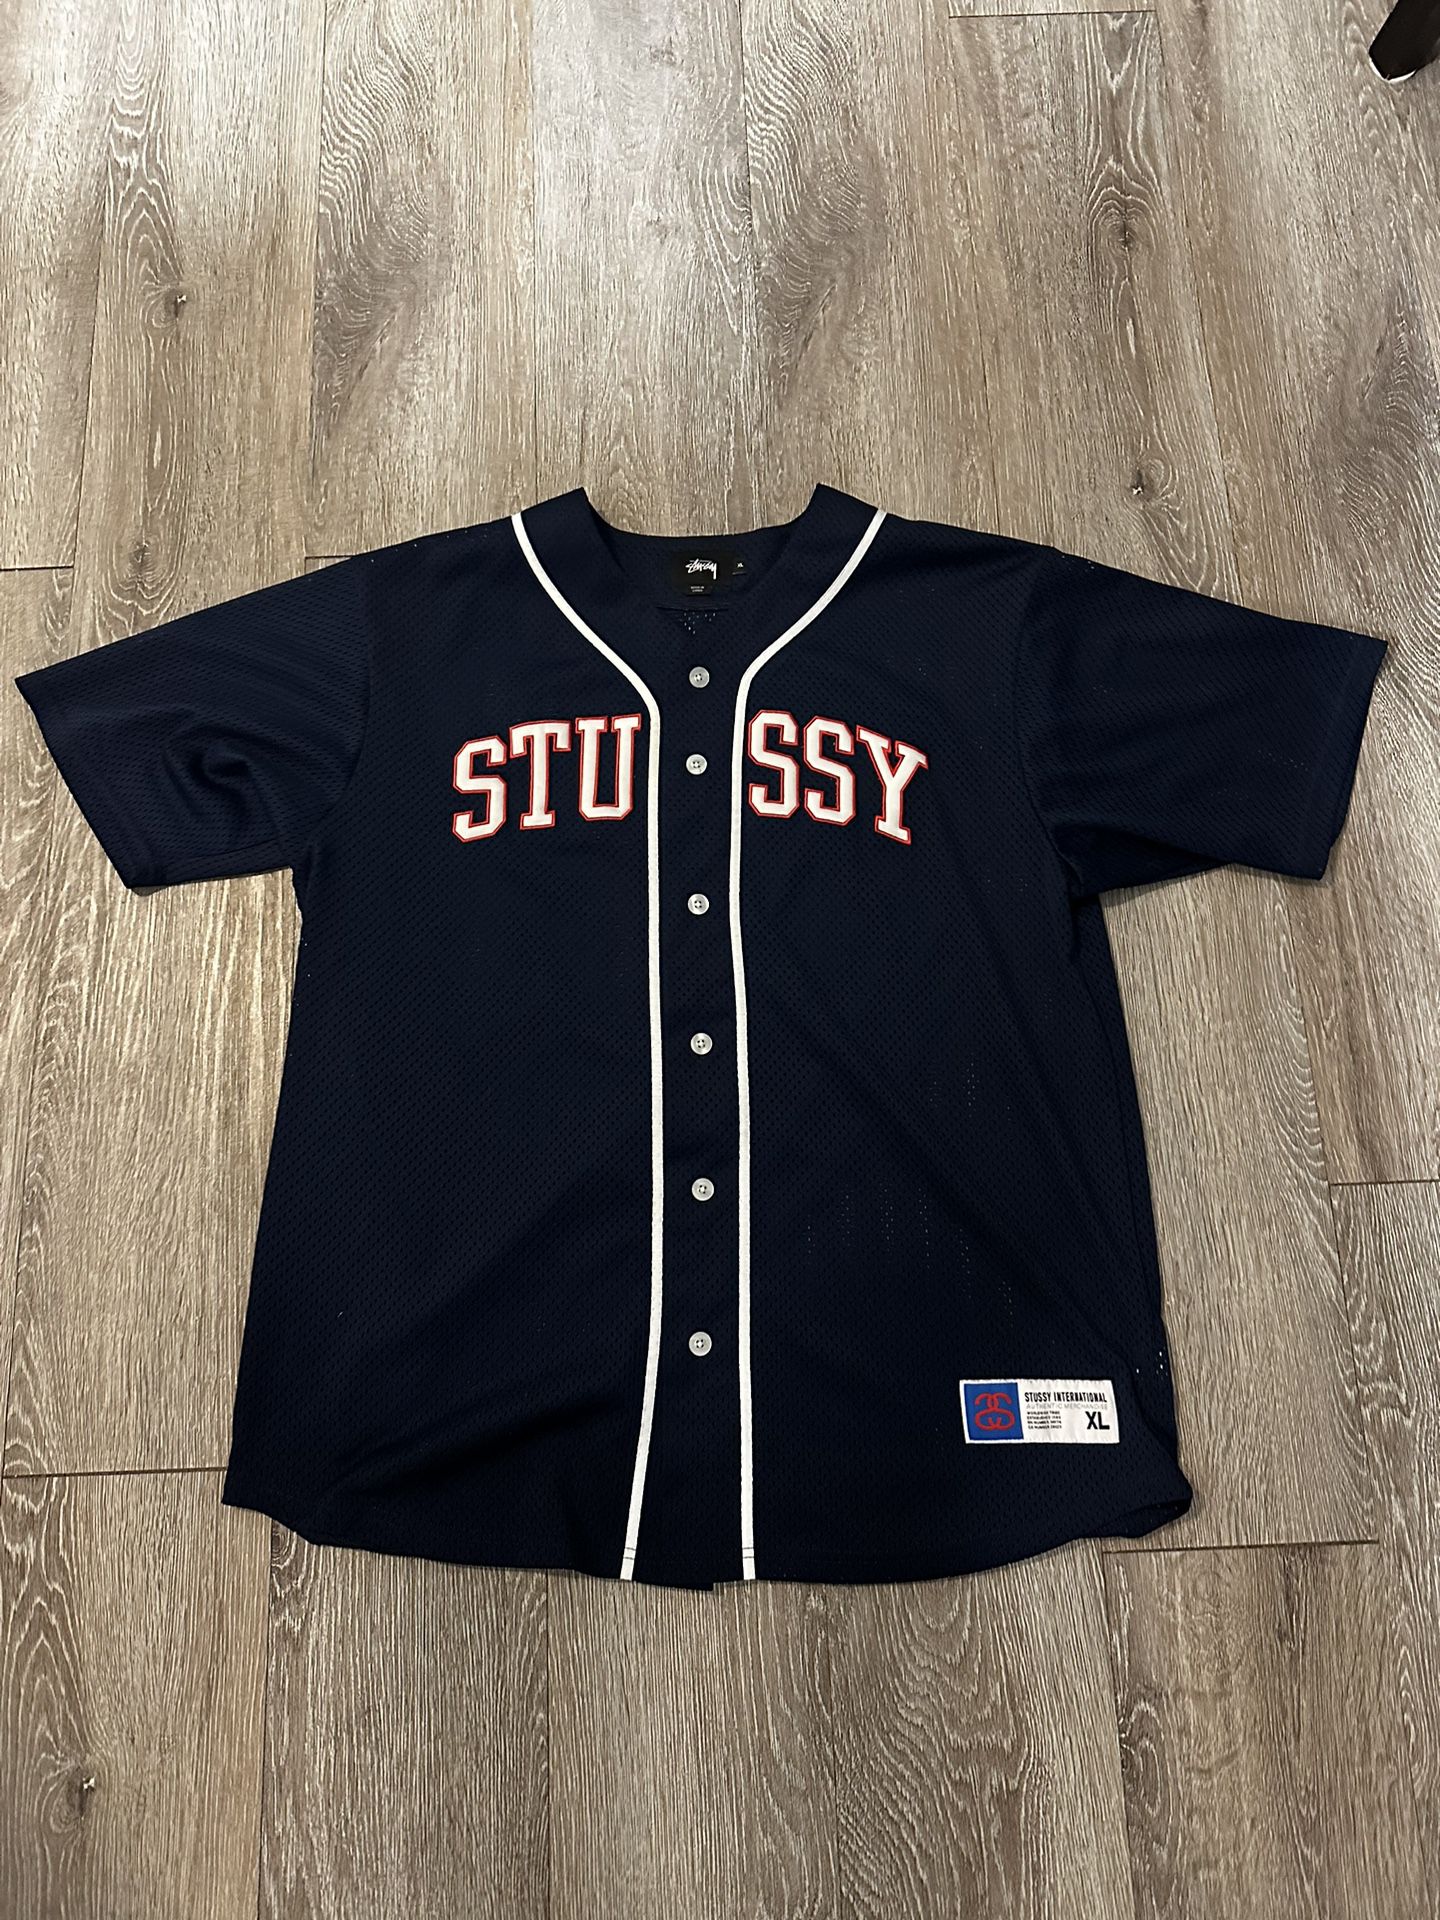 Stussy Baseball Jersey 